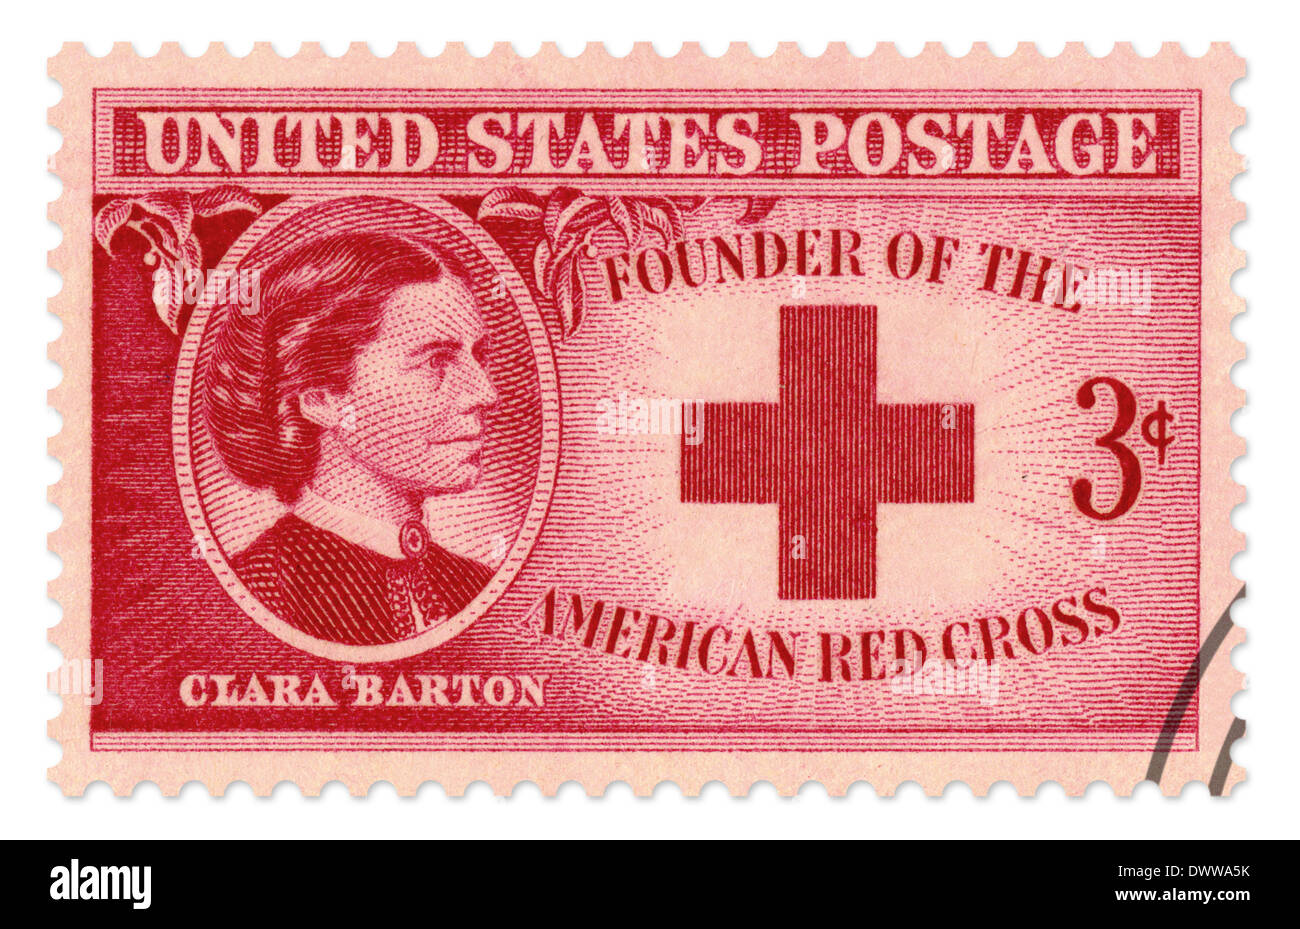 Clara Barton, timbre commémoratif émis en 1948 par le Service postal des Etats-Unis. Cette numérisation haute résolution comprend un chemin de détourage. Banque D'Images